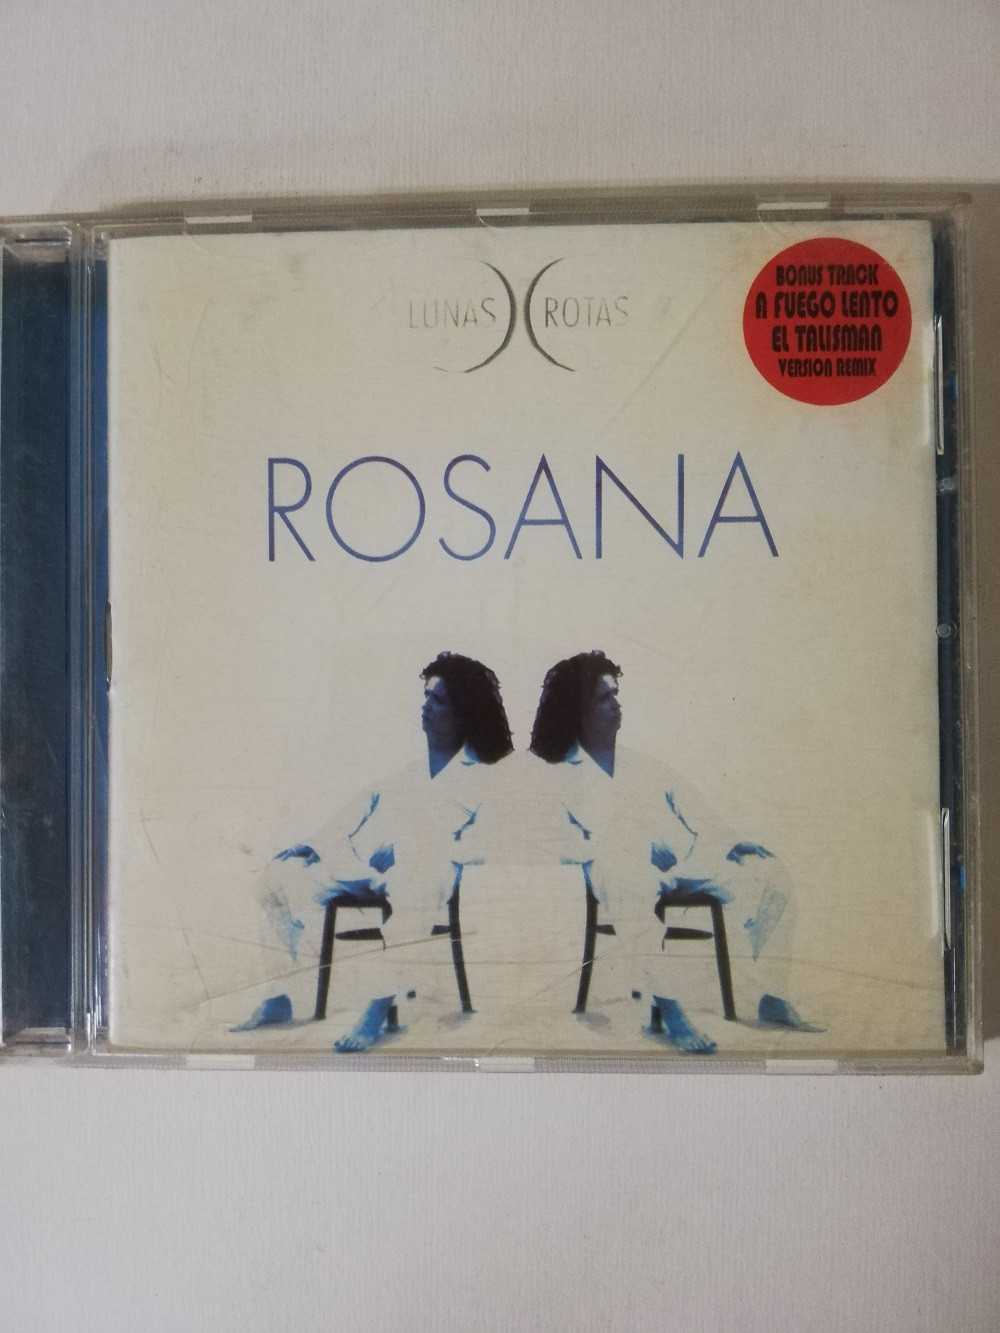 Imagen CD ROSANA - LUNAS ROJAS 1